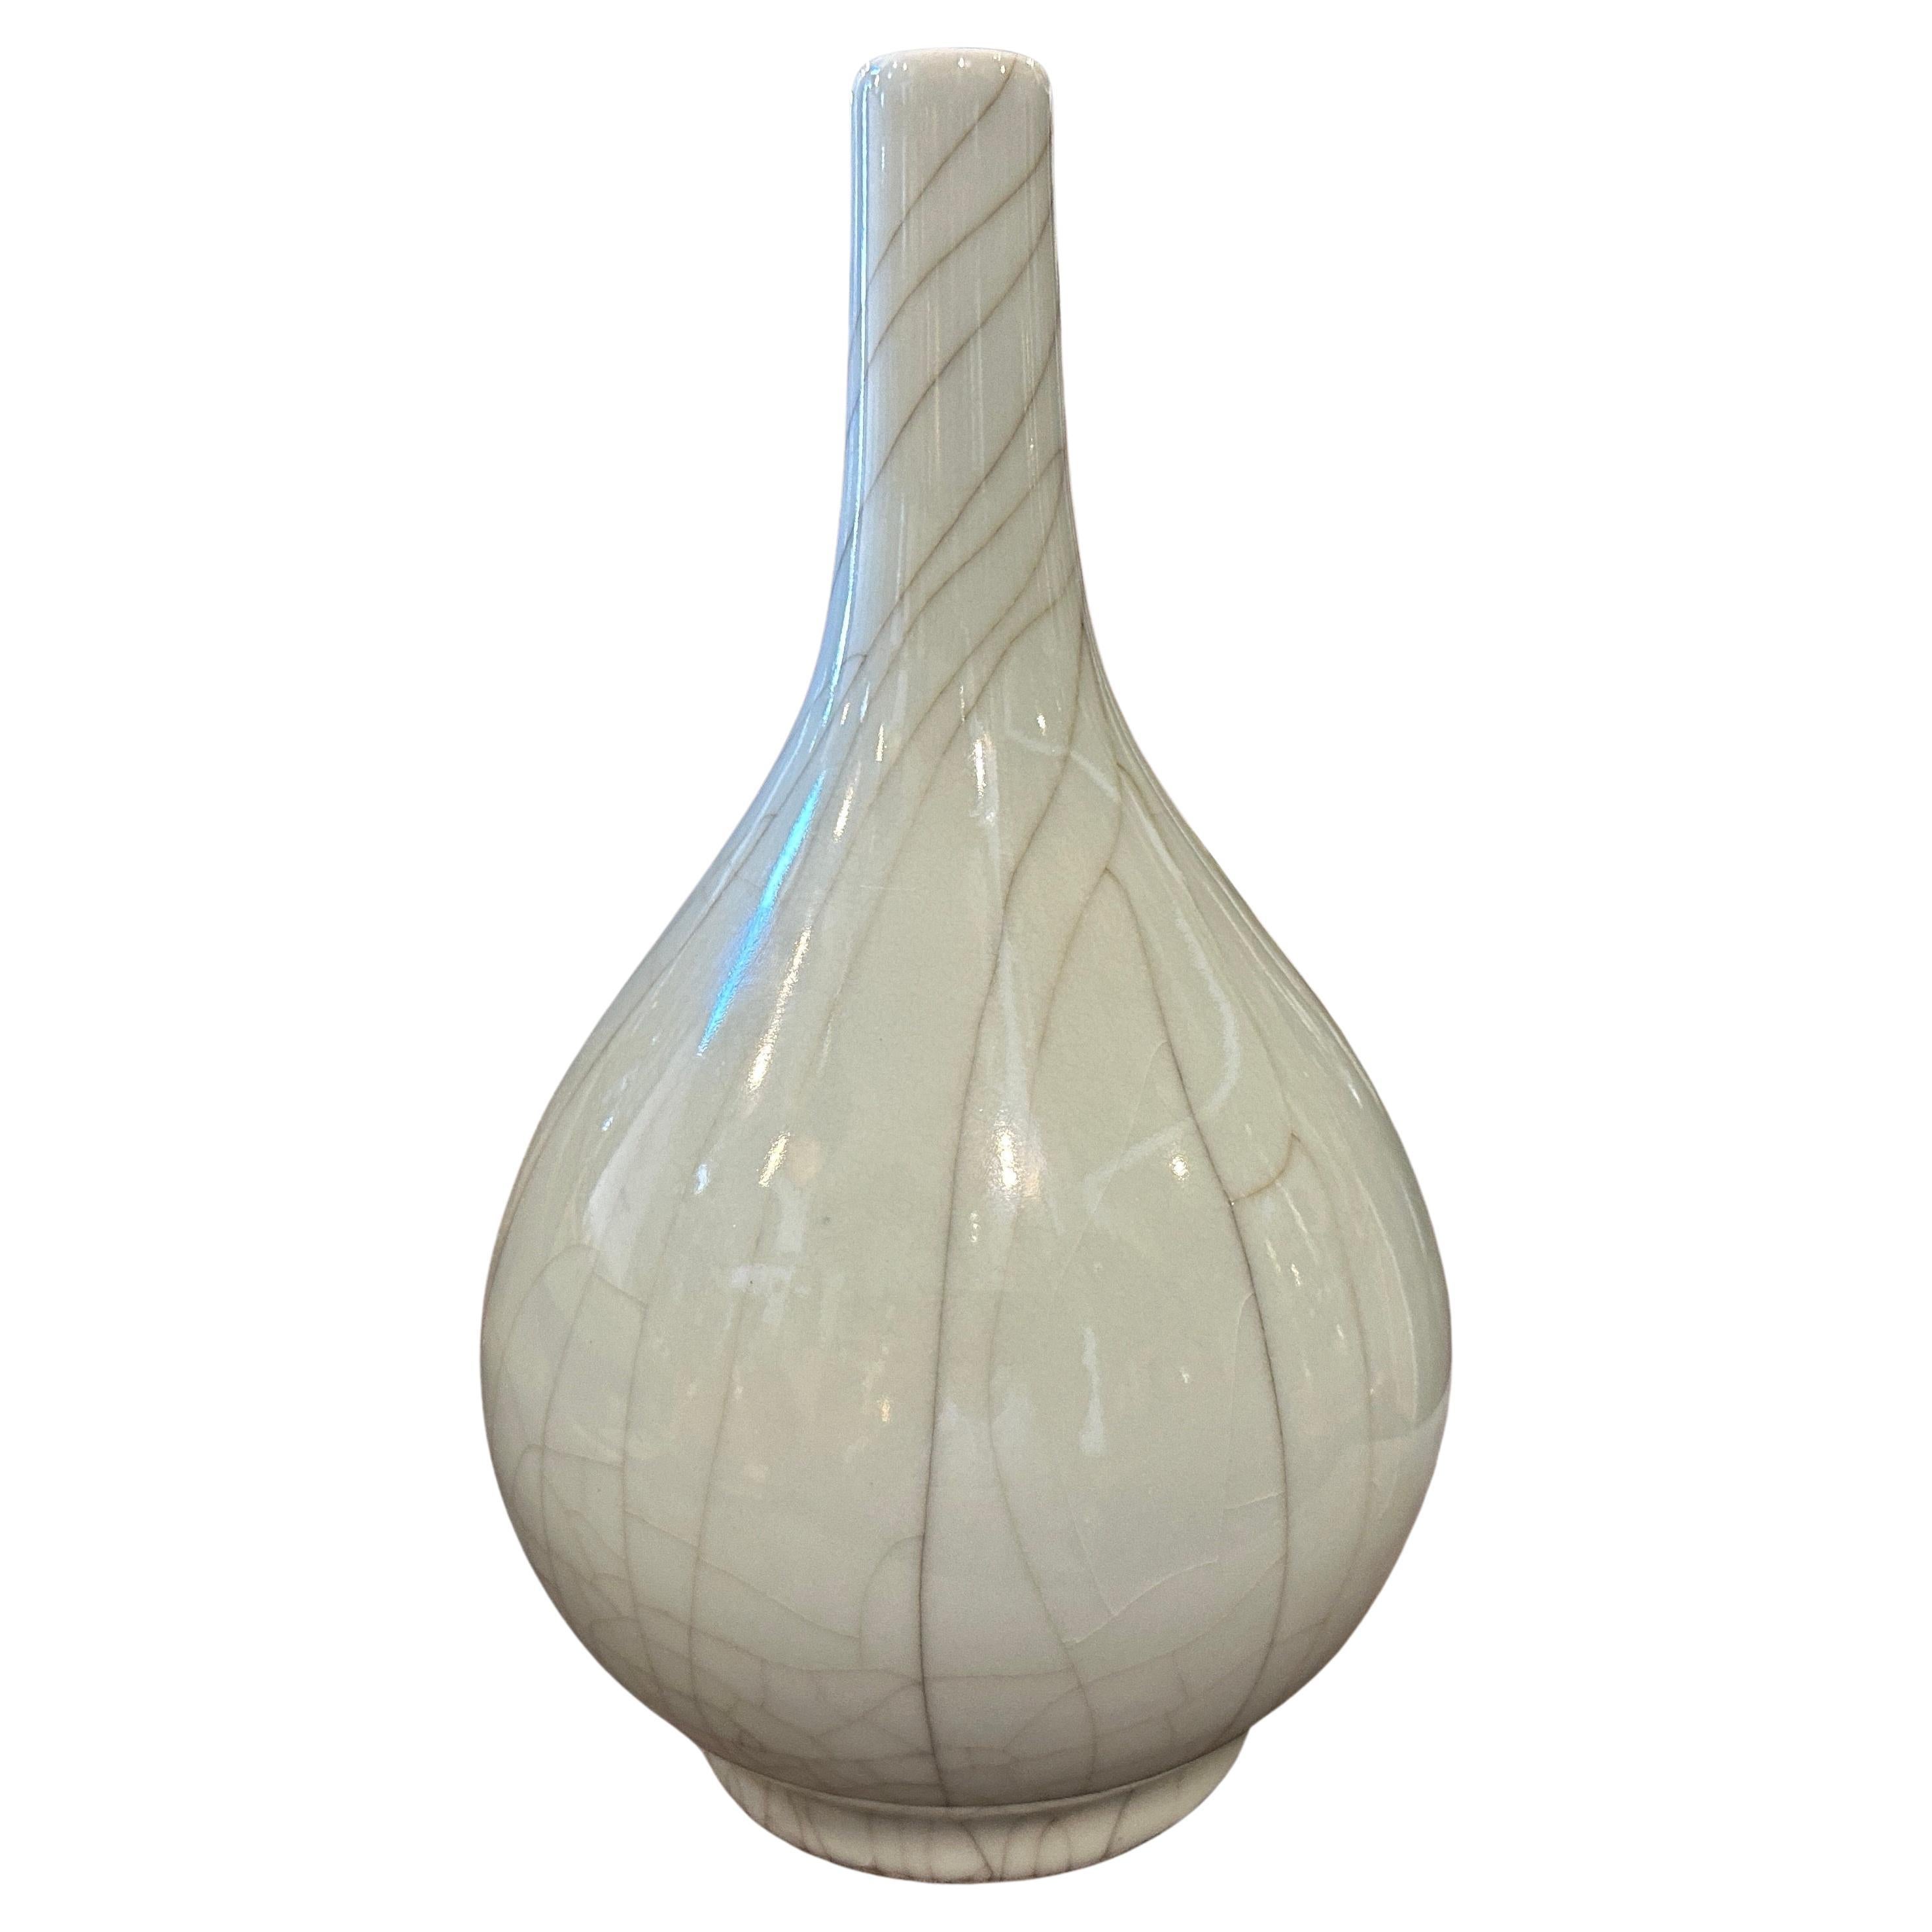 19th Century Greyish Celadon Glazed Chinese Porcelain Round Vase